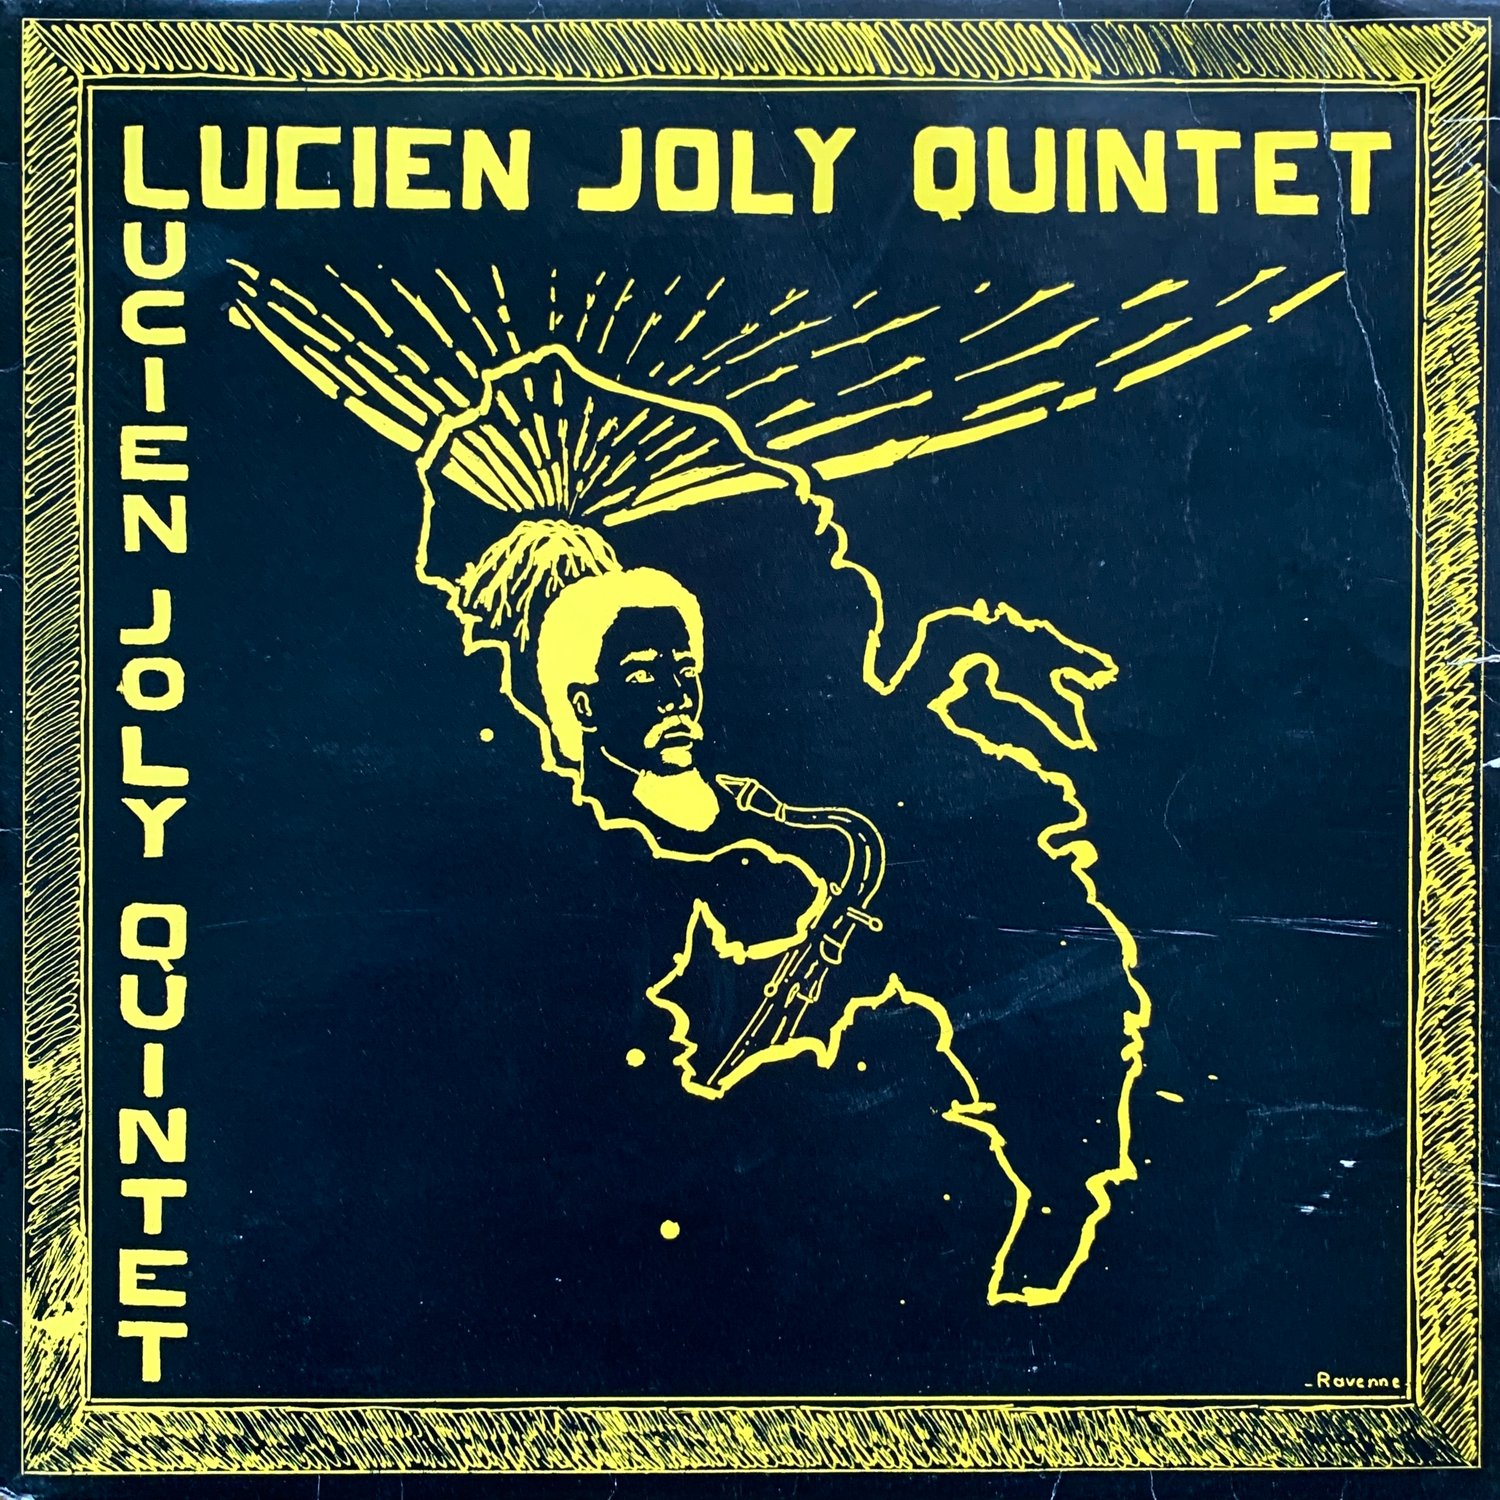 Lucien Joly Quintet – Lucien Joly Quintet (Solo Gammes Productions – 1002 - 1986)